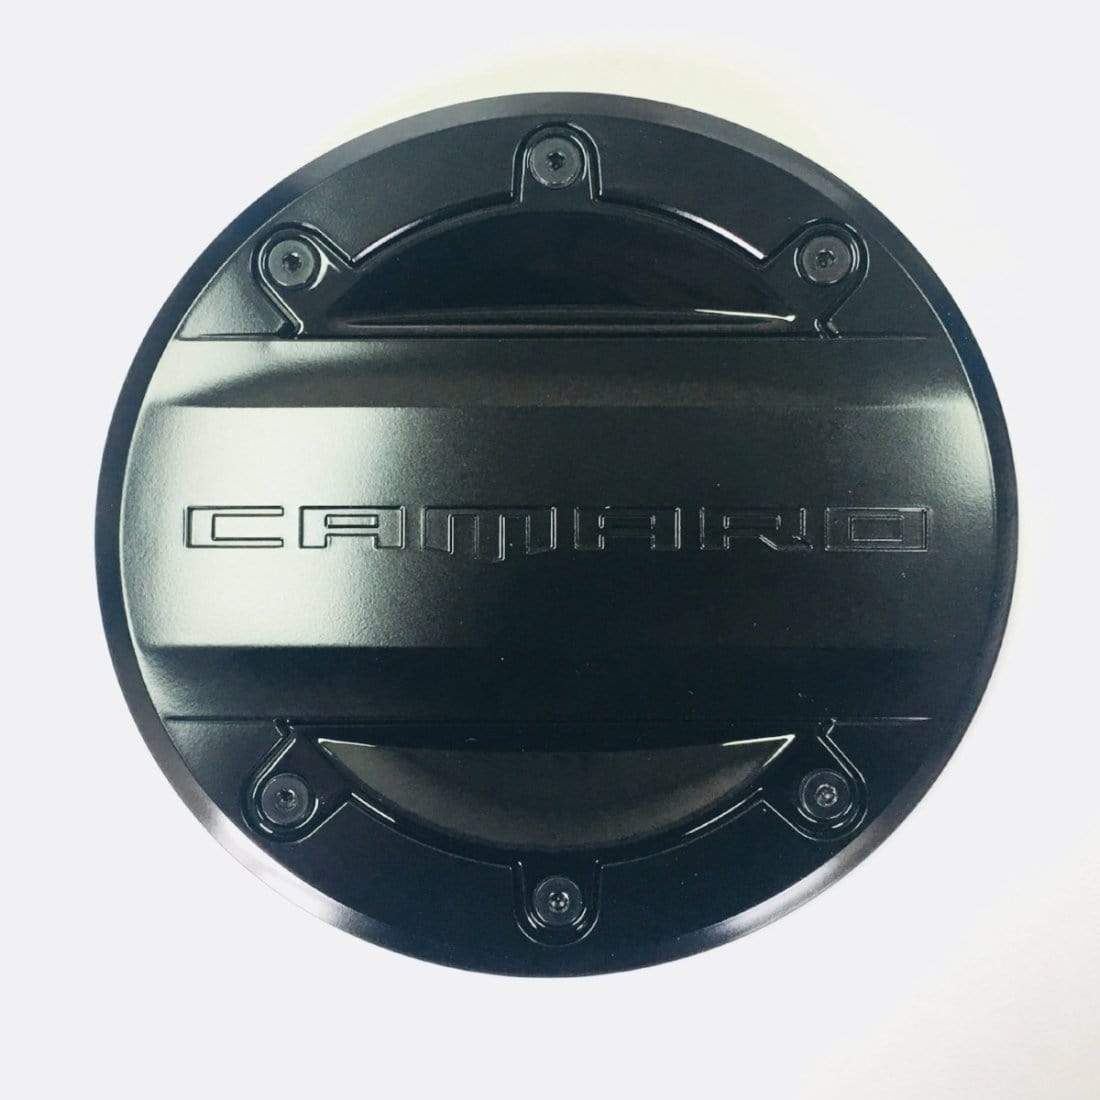 Black fuel door cap with Camaro encryption, SKU 48-4-095, adds unique style to your Camaro's exterior.